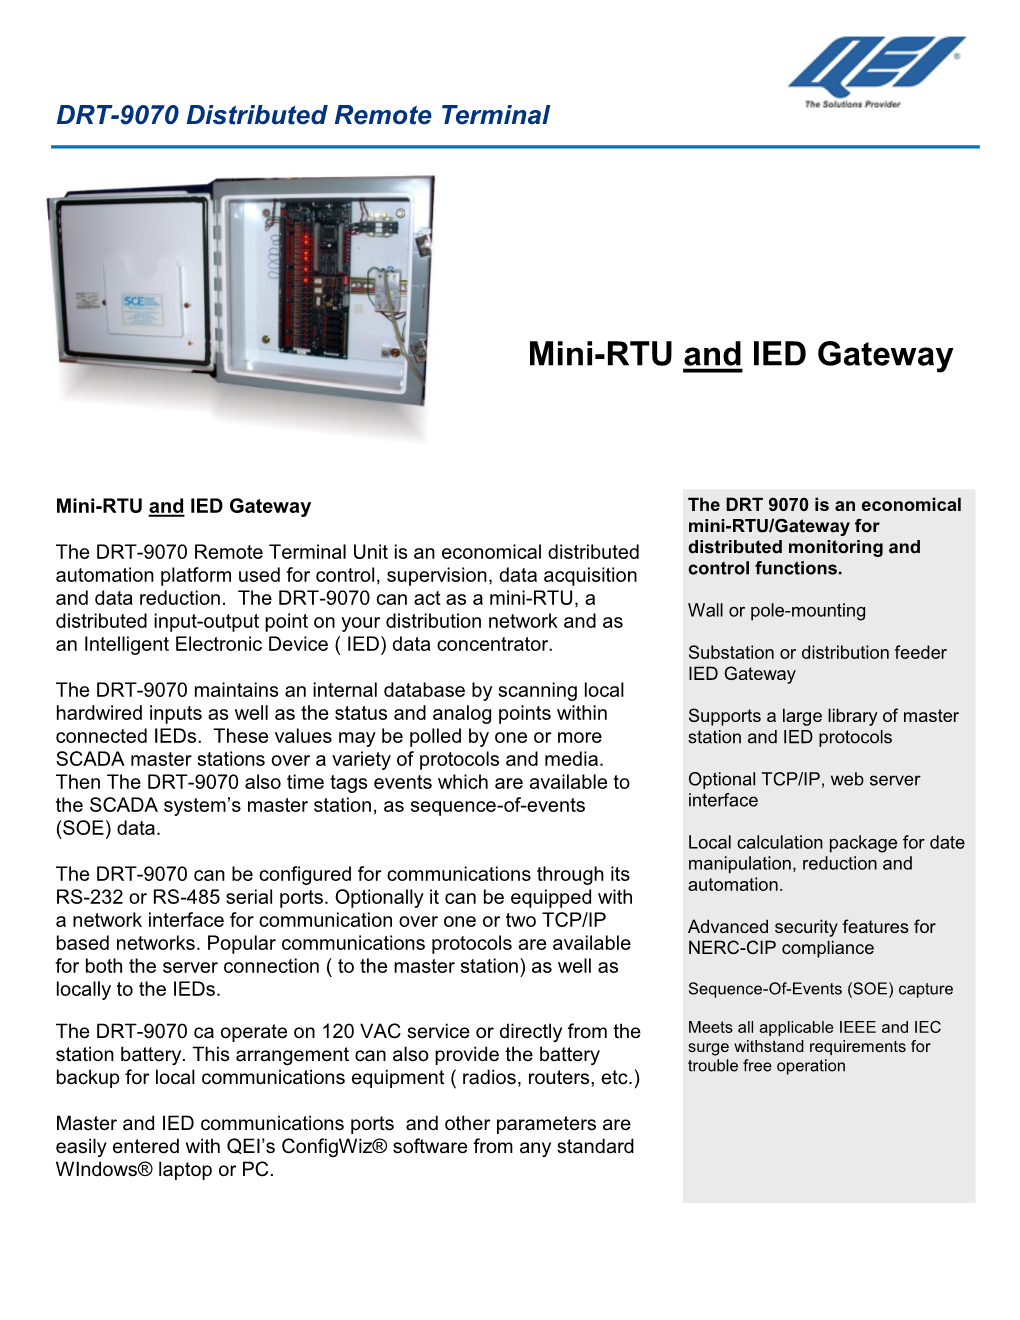 Mini-RTU and IED Gateway